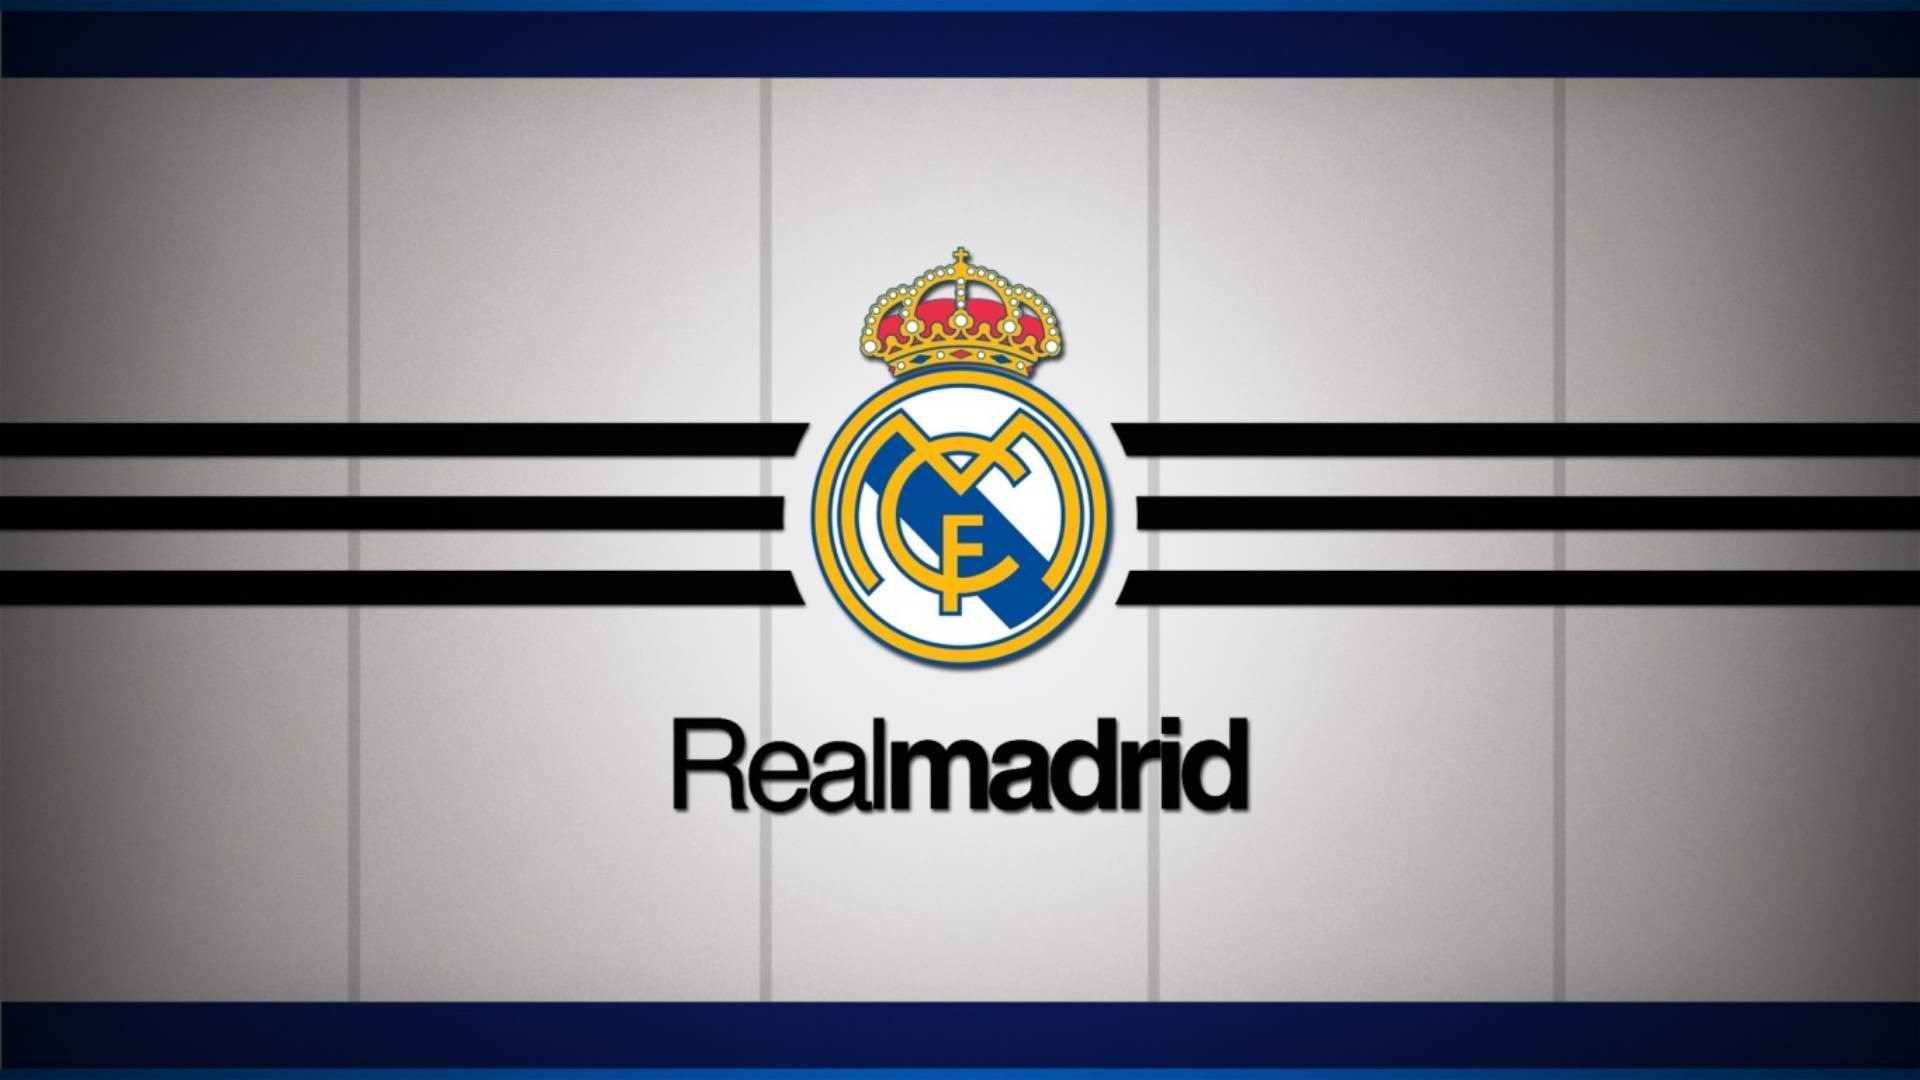 Real Madrid Club De Fútbol Fotos Wallpaper Wallpaper HD. Madrid wallpaper, Real madrid wallpaper, Real madrid logo wallpaper